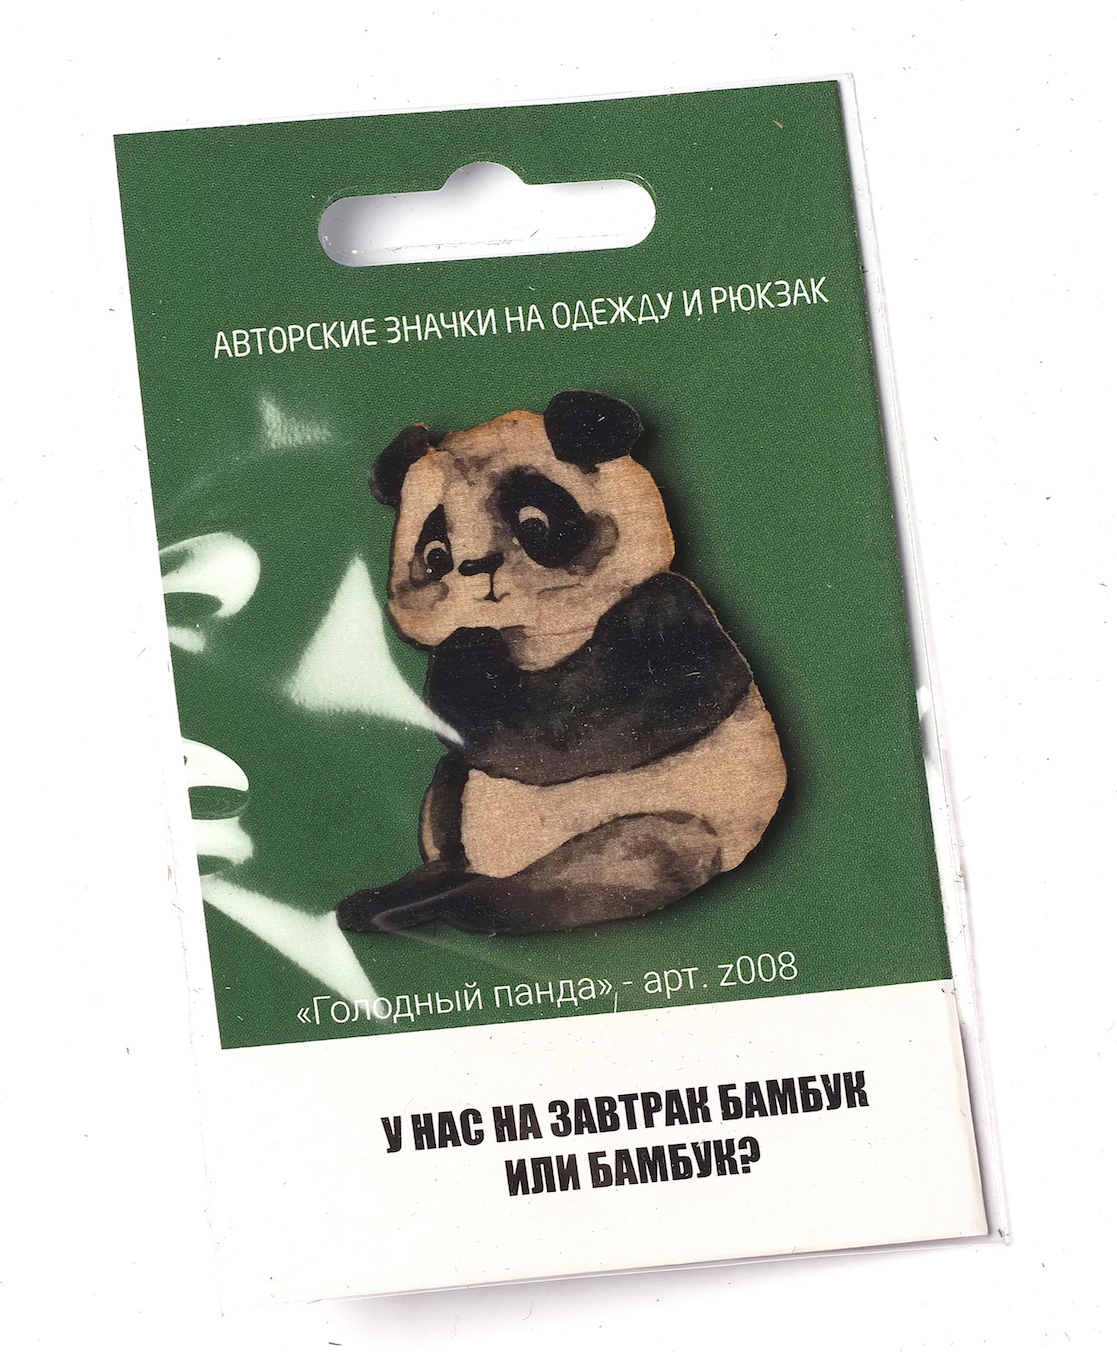 фото Авторский значок из дерева "Голодный панда", АРТВЕНТУРА